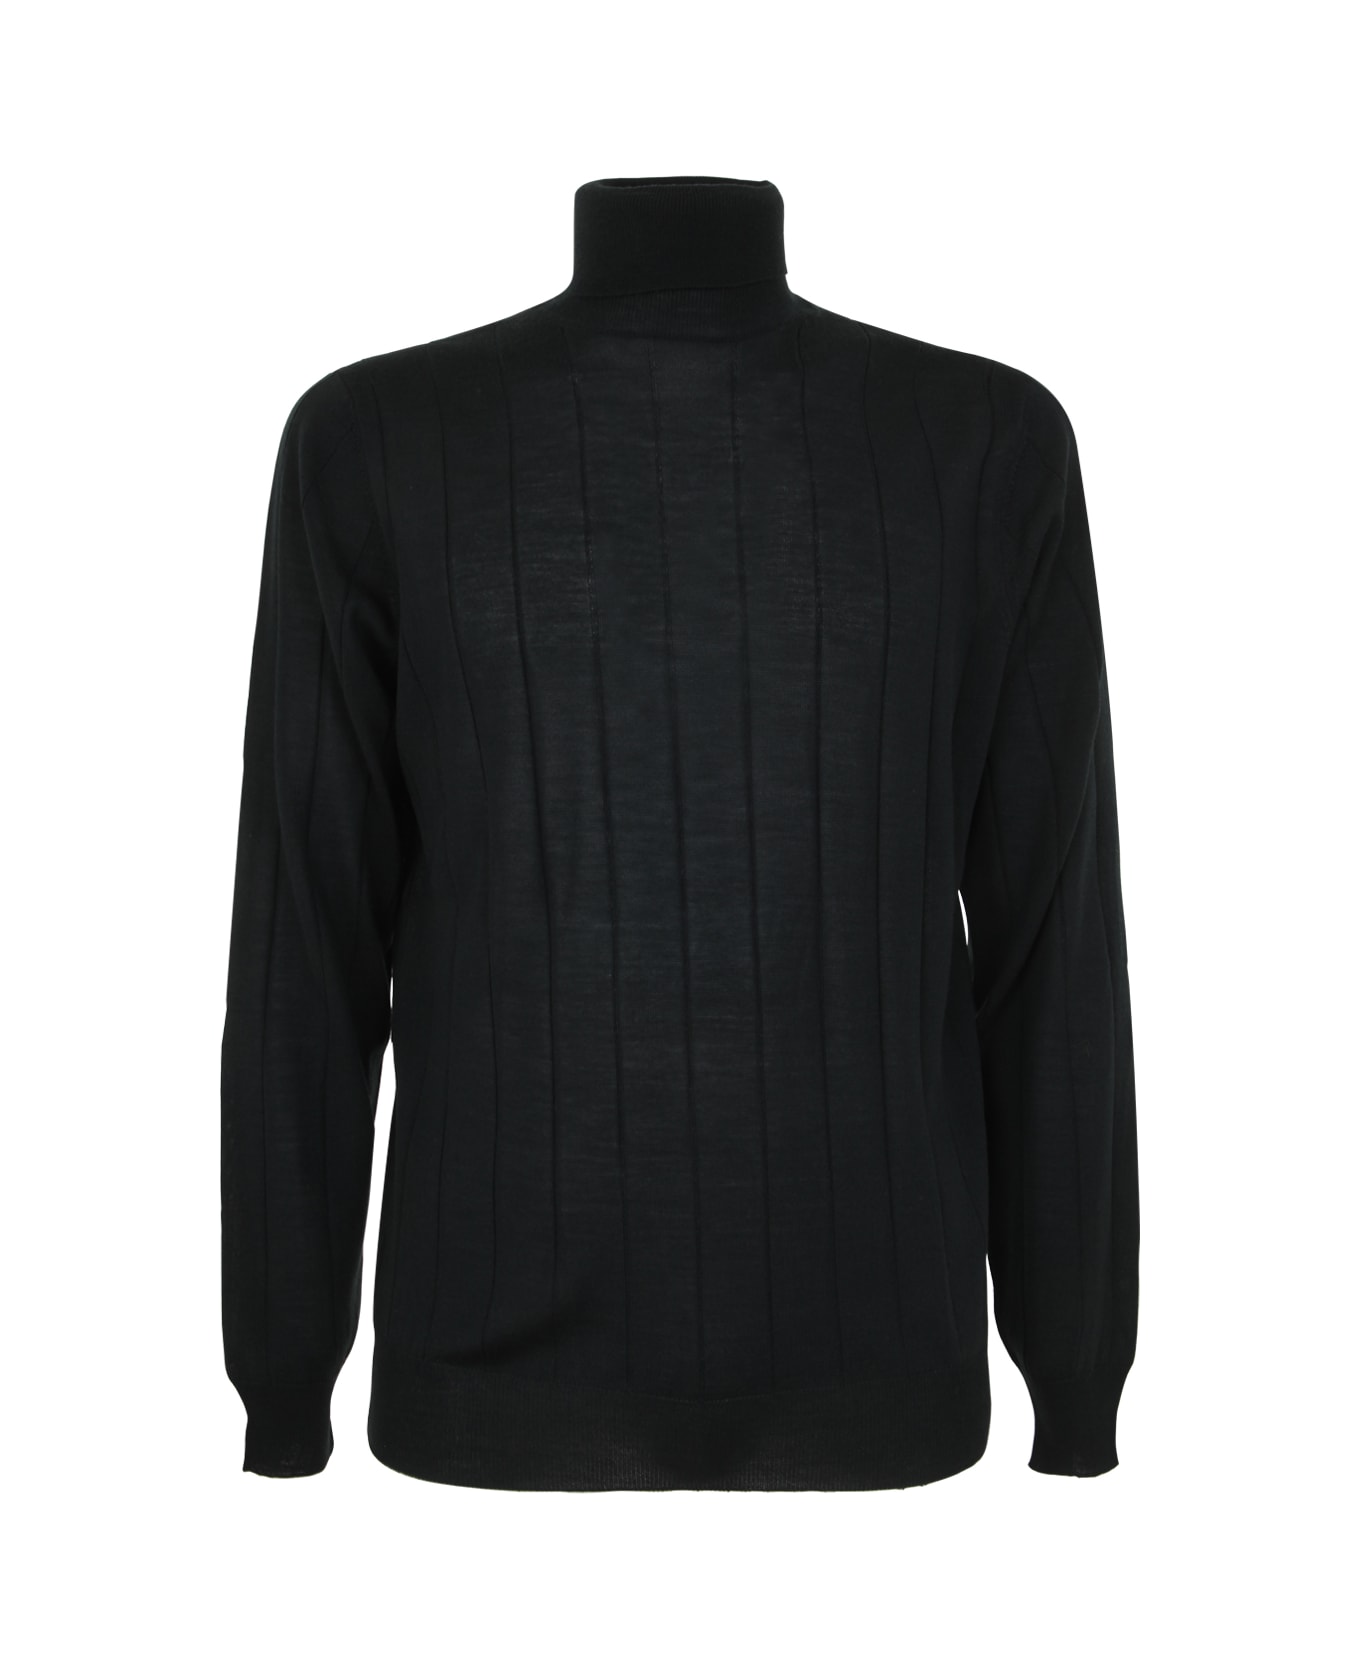 Filippo De Laurentiis Royal Merino Long Sleeves Turtle Neck Sweater - Green ニットウェア